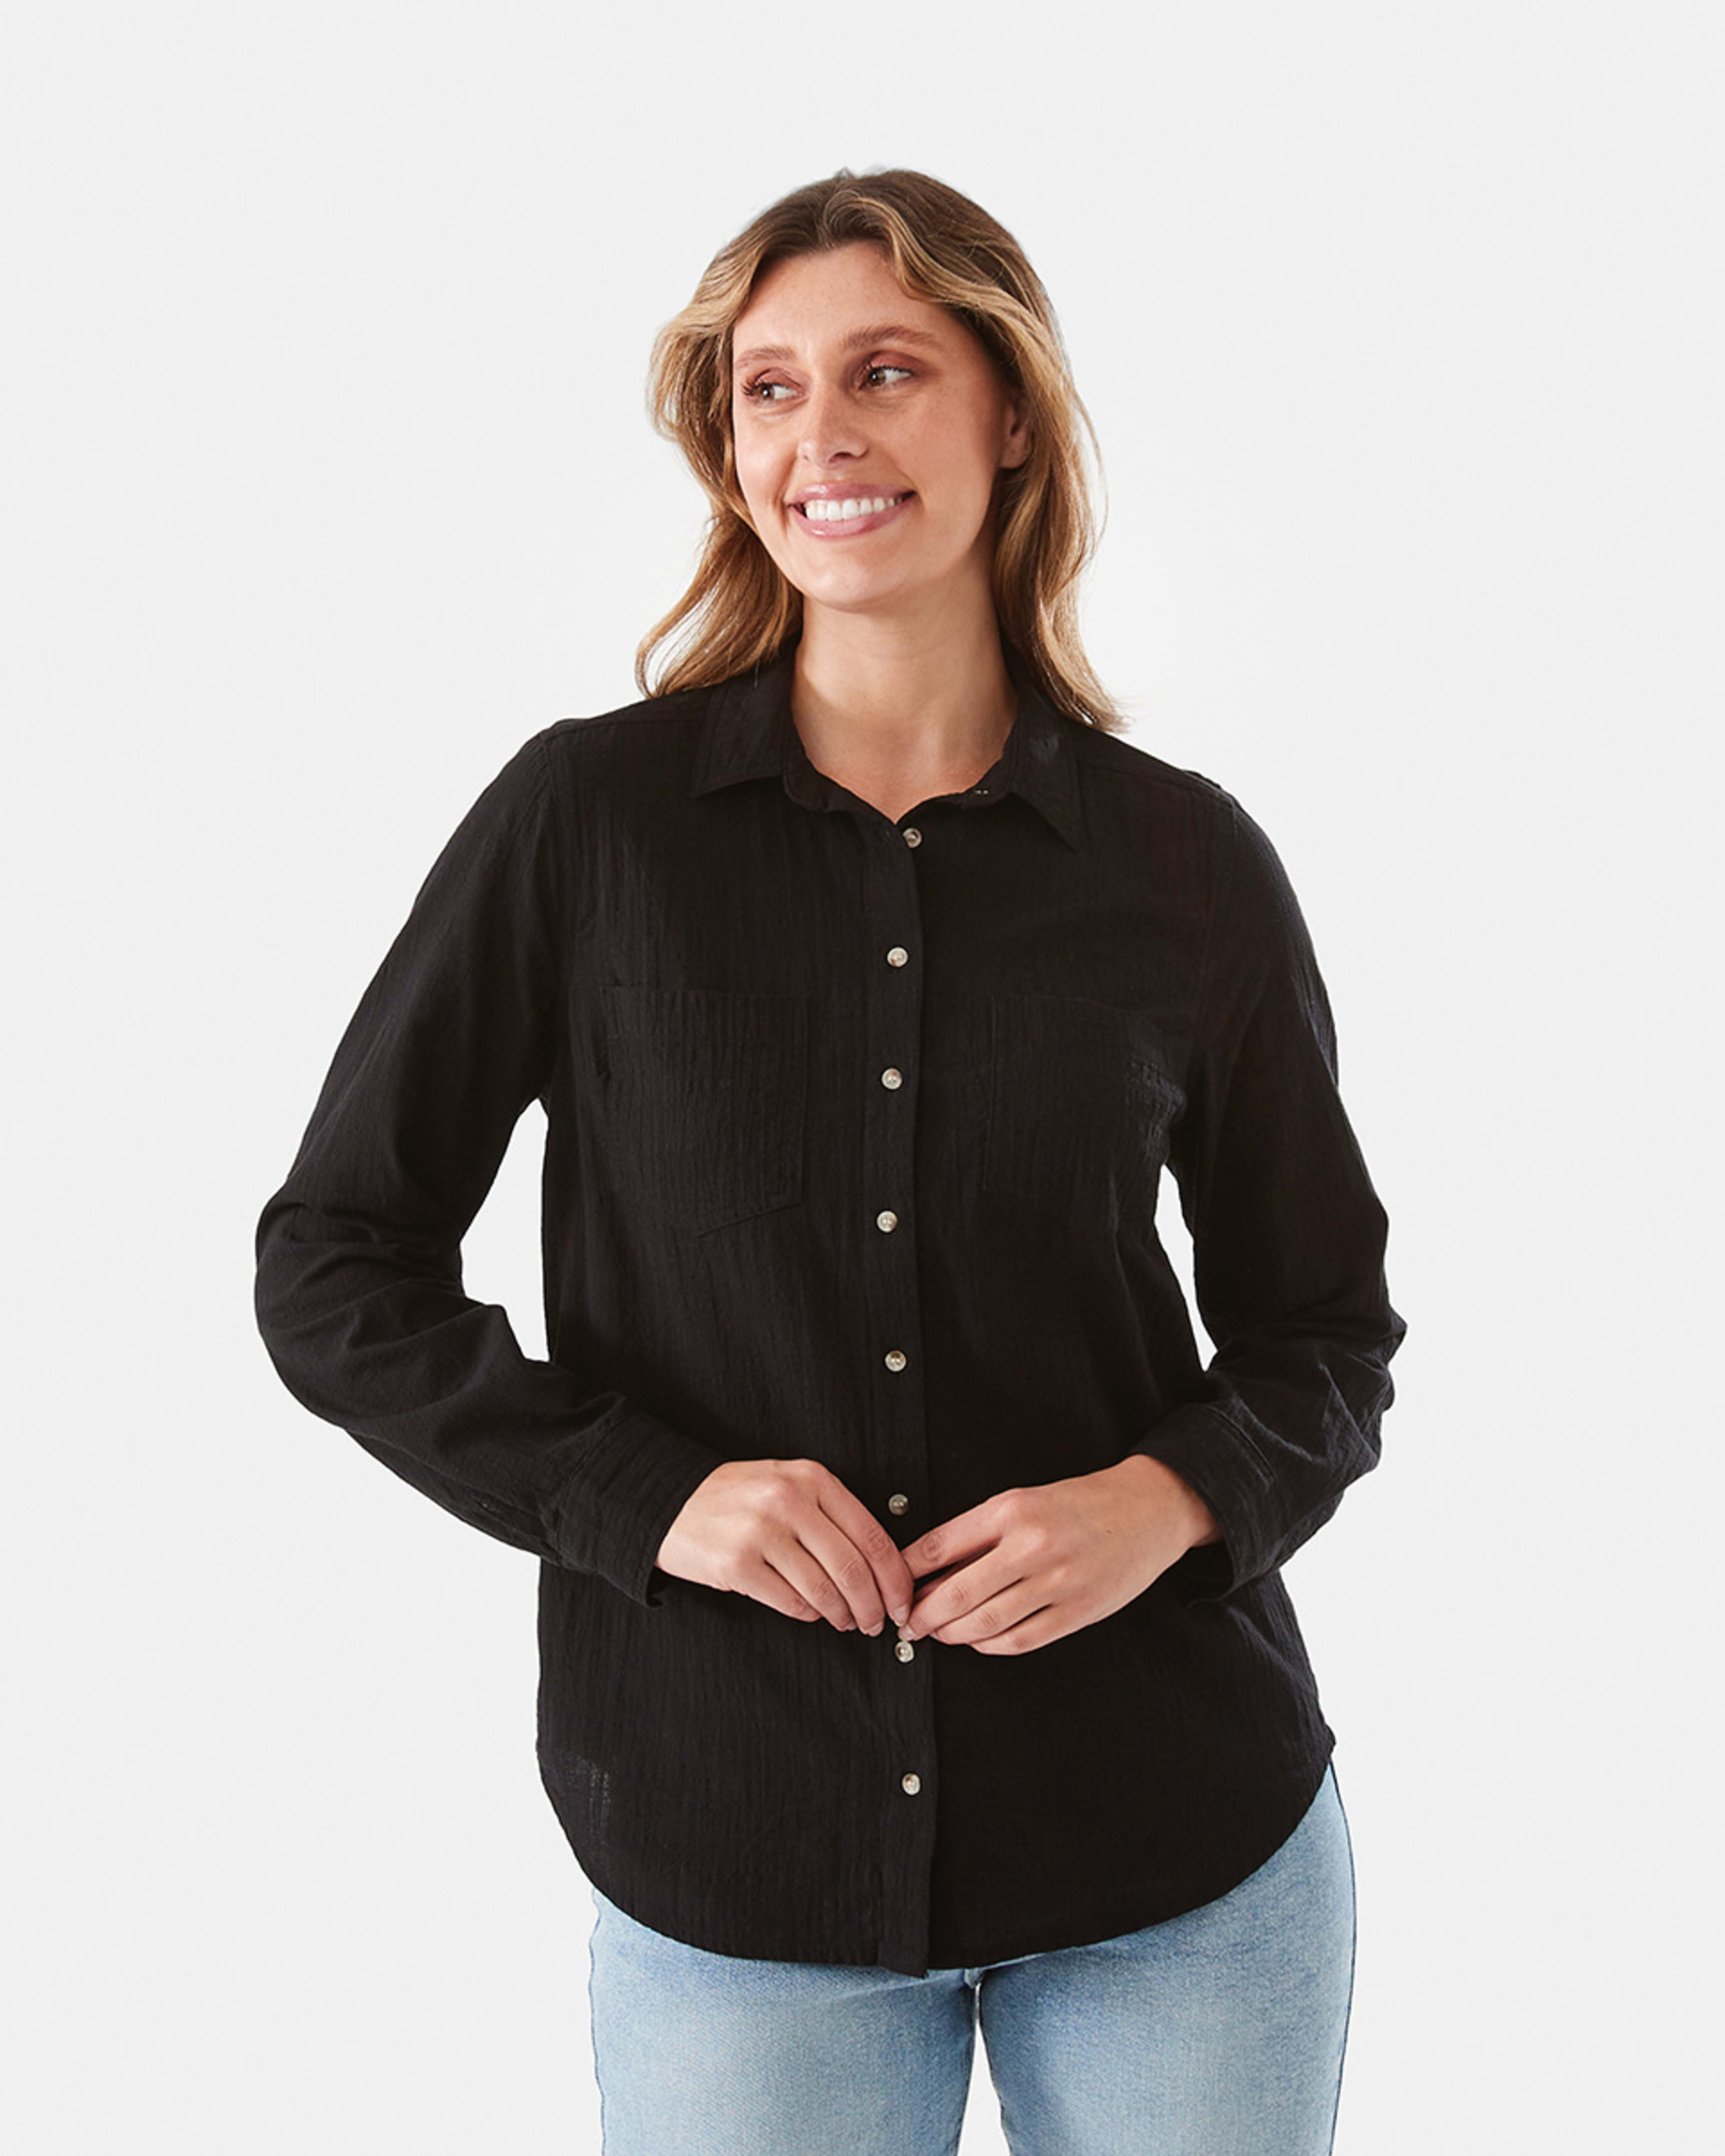 Long Sleeve Casual Shirt - Kmart NZ